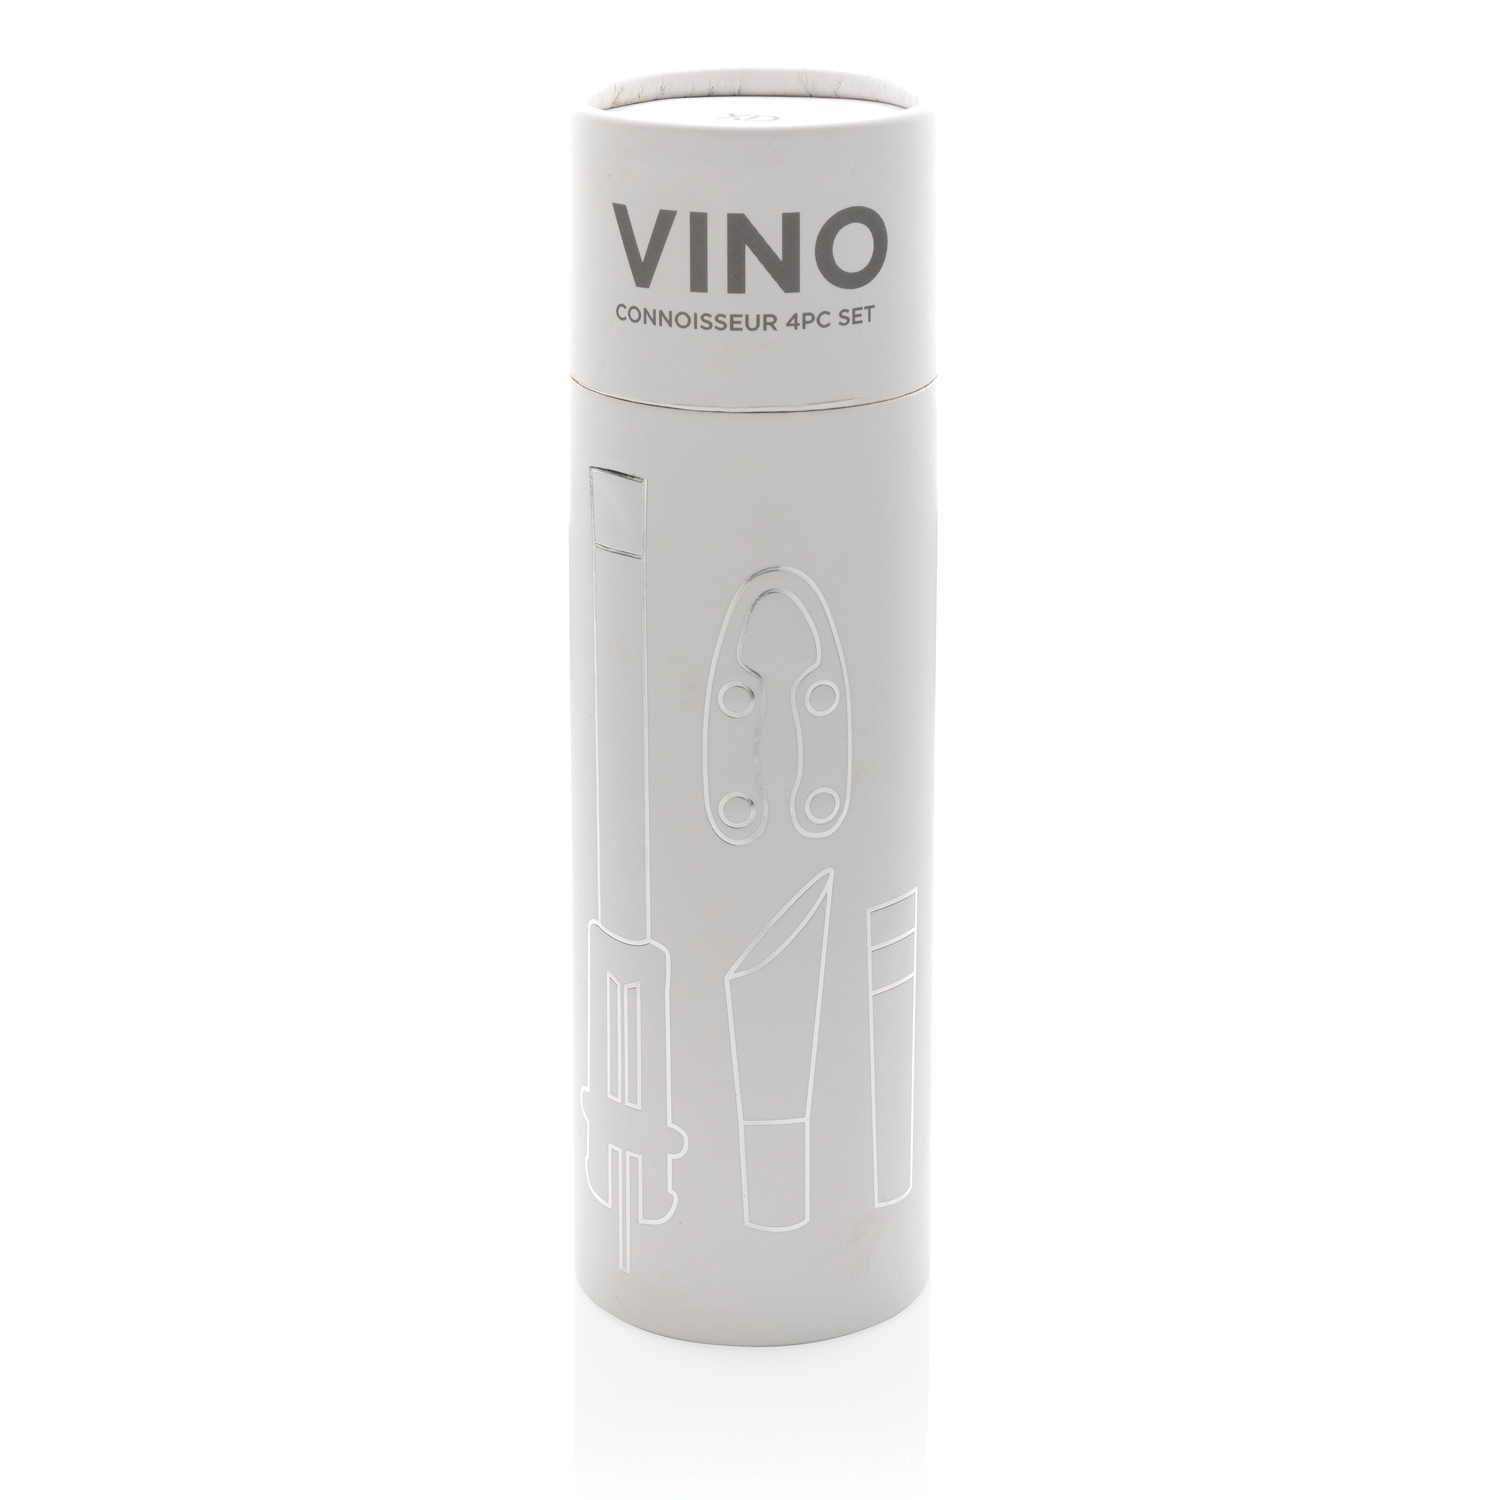 Профессиональный винный набор Vino, 4 предмета, серебристый, abs; нержавеющая сталь